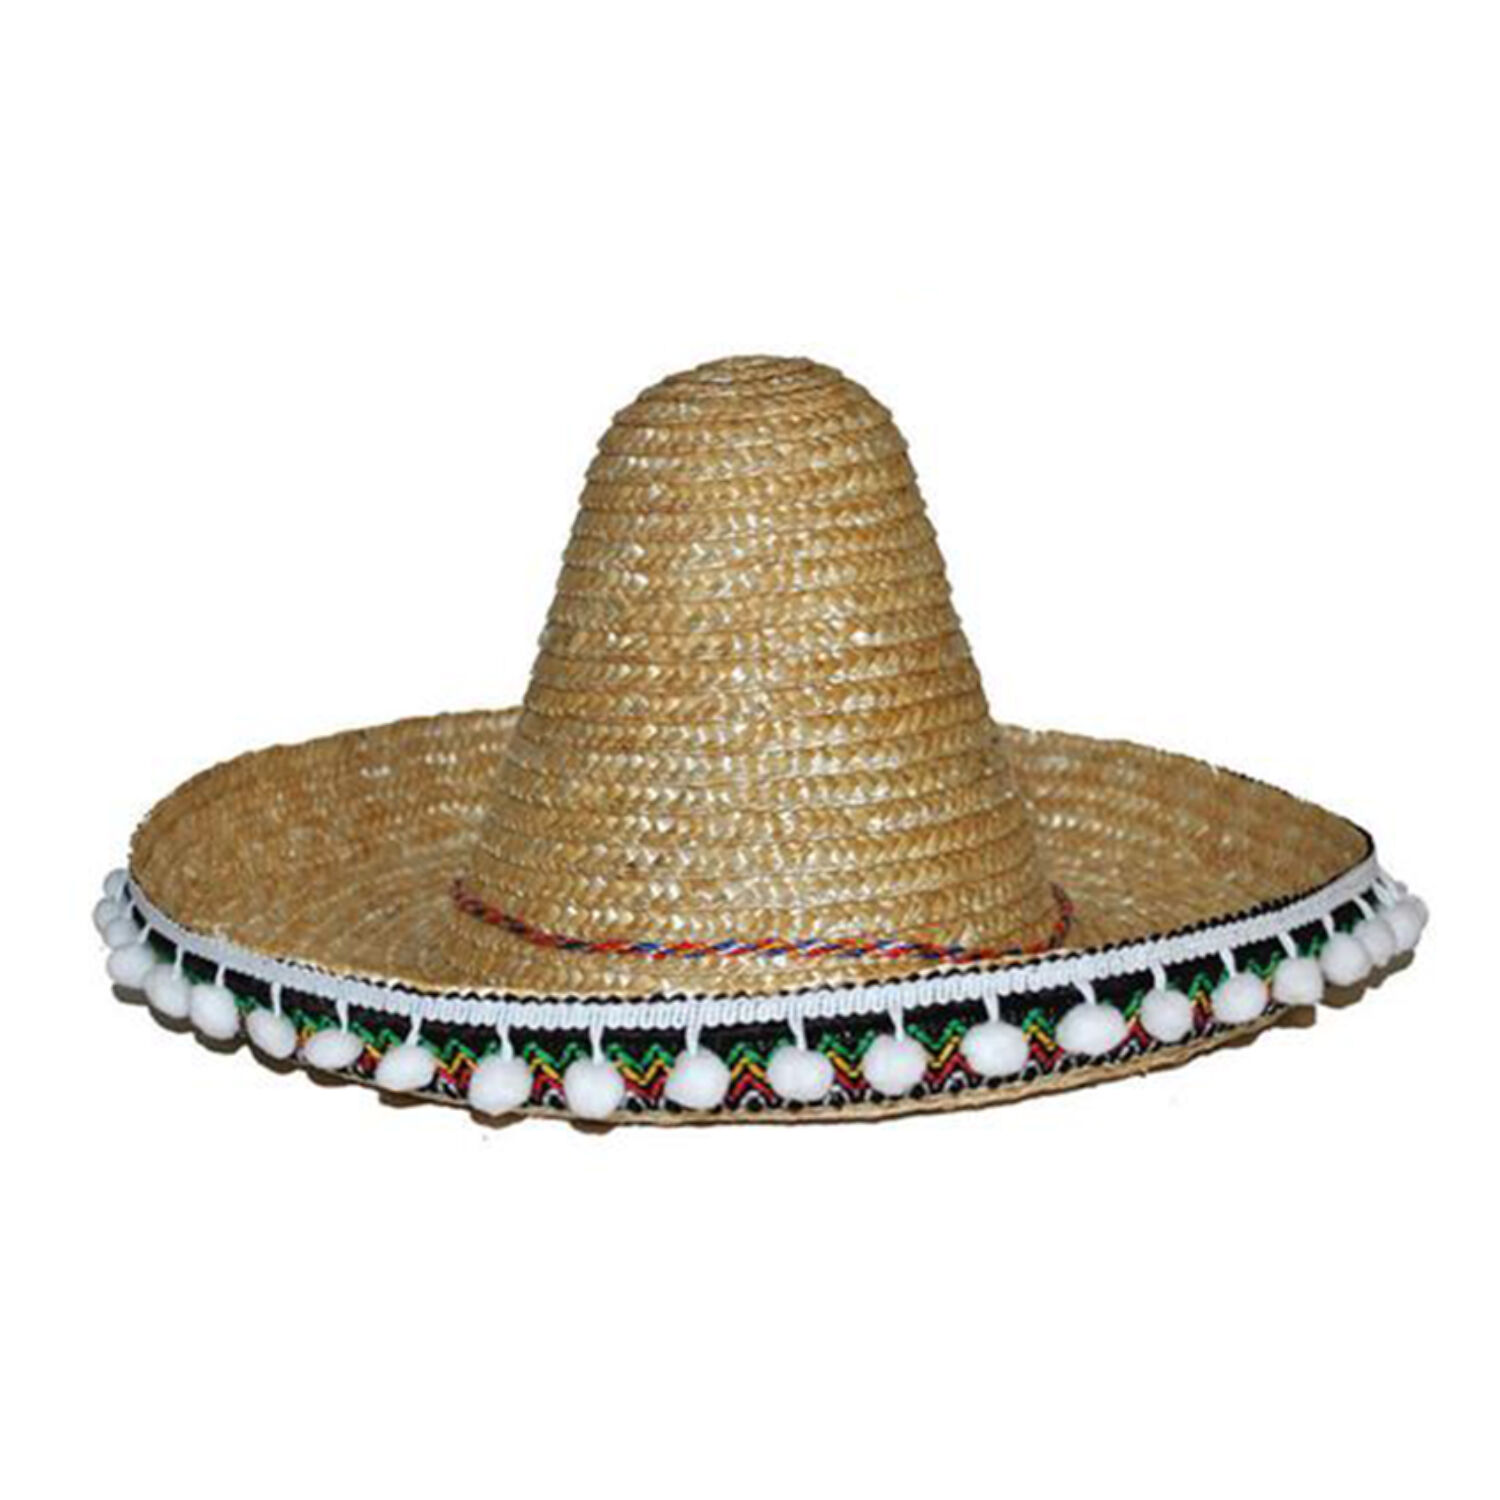 NEU Mexikanischer Hut / Sombrero mit Bommeln, Durchmesser 60 cm, Natur